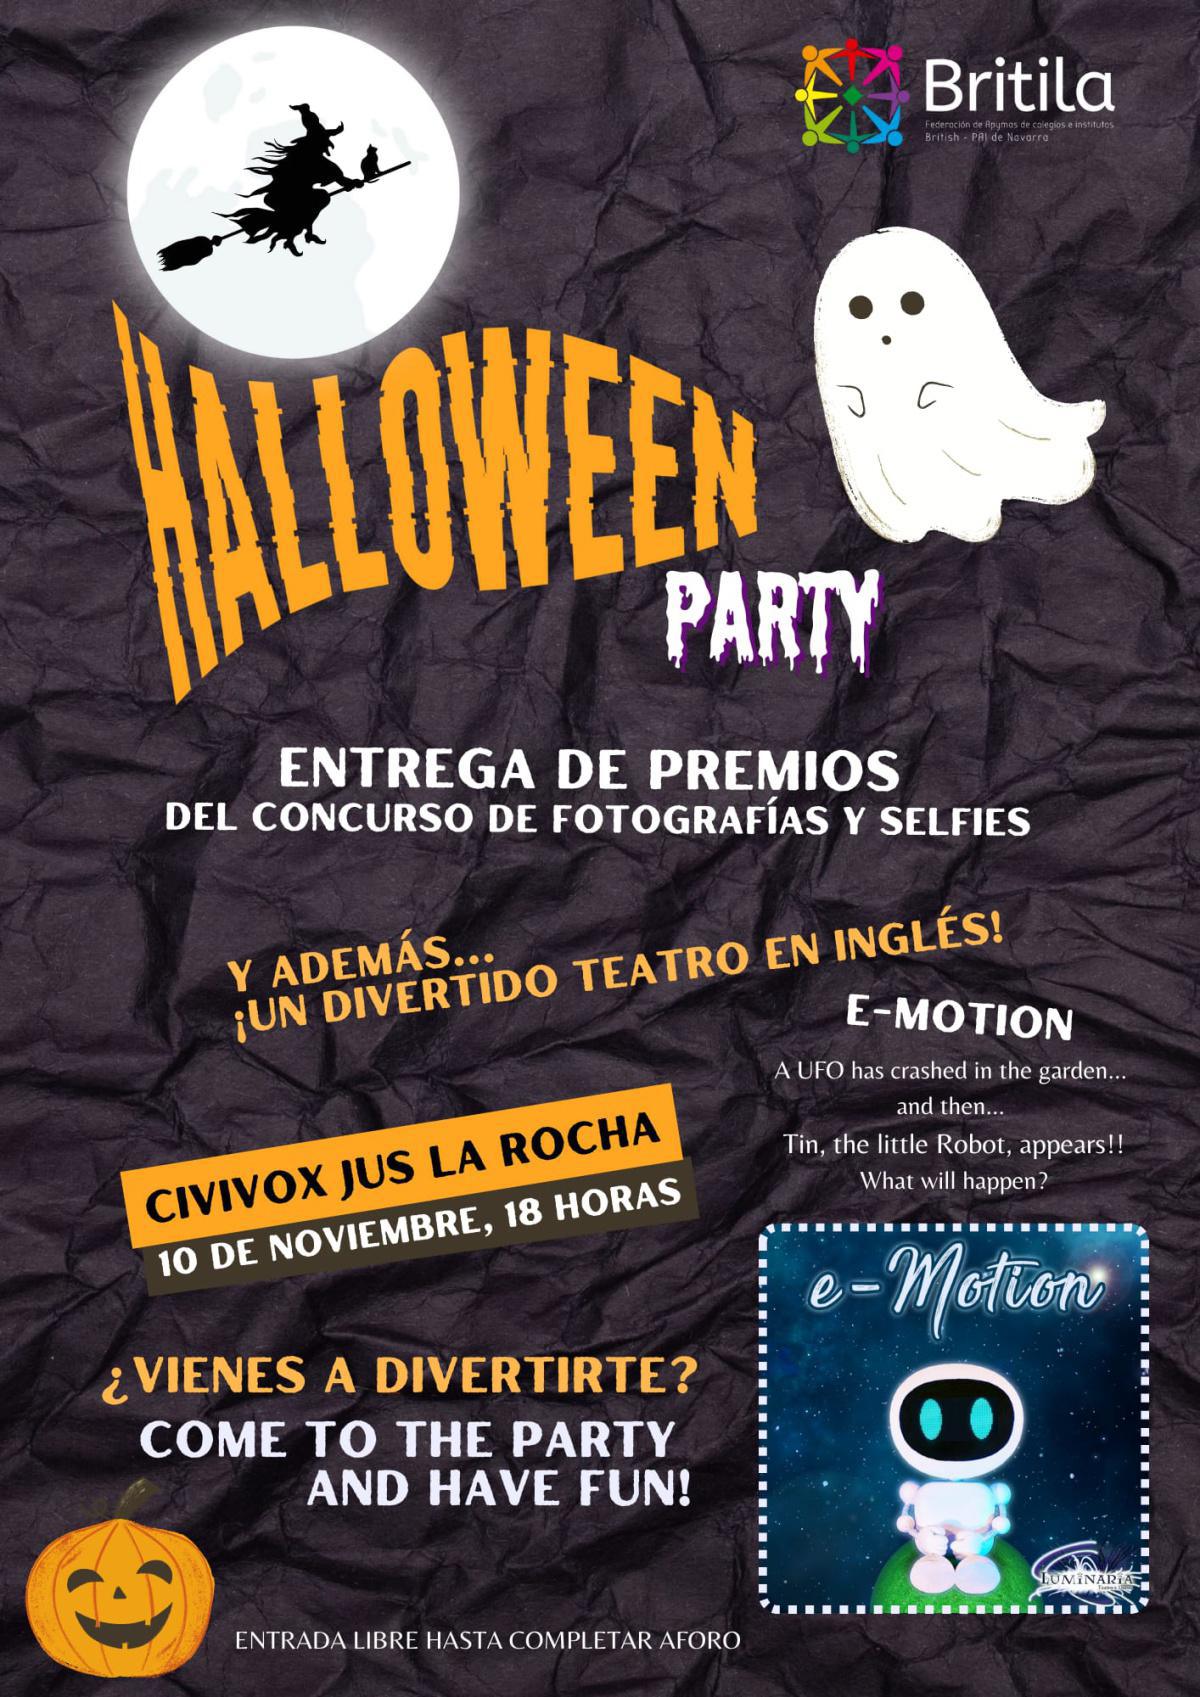 Halloween Party el 10 noviembre en Civivox Jus la Rocha